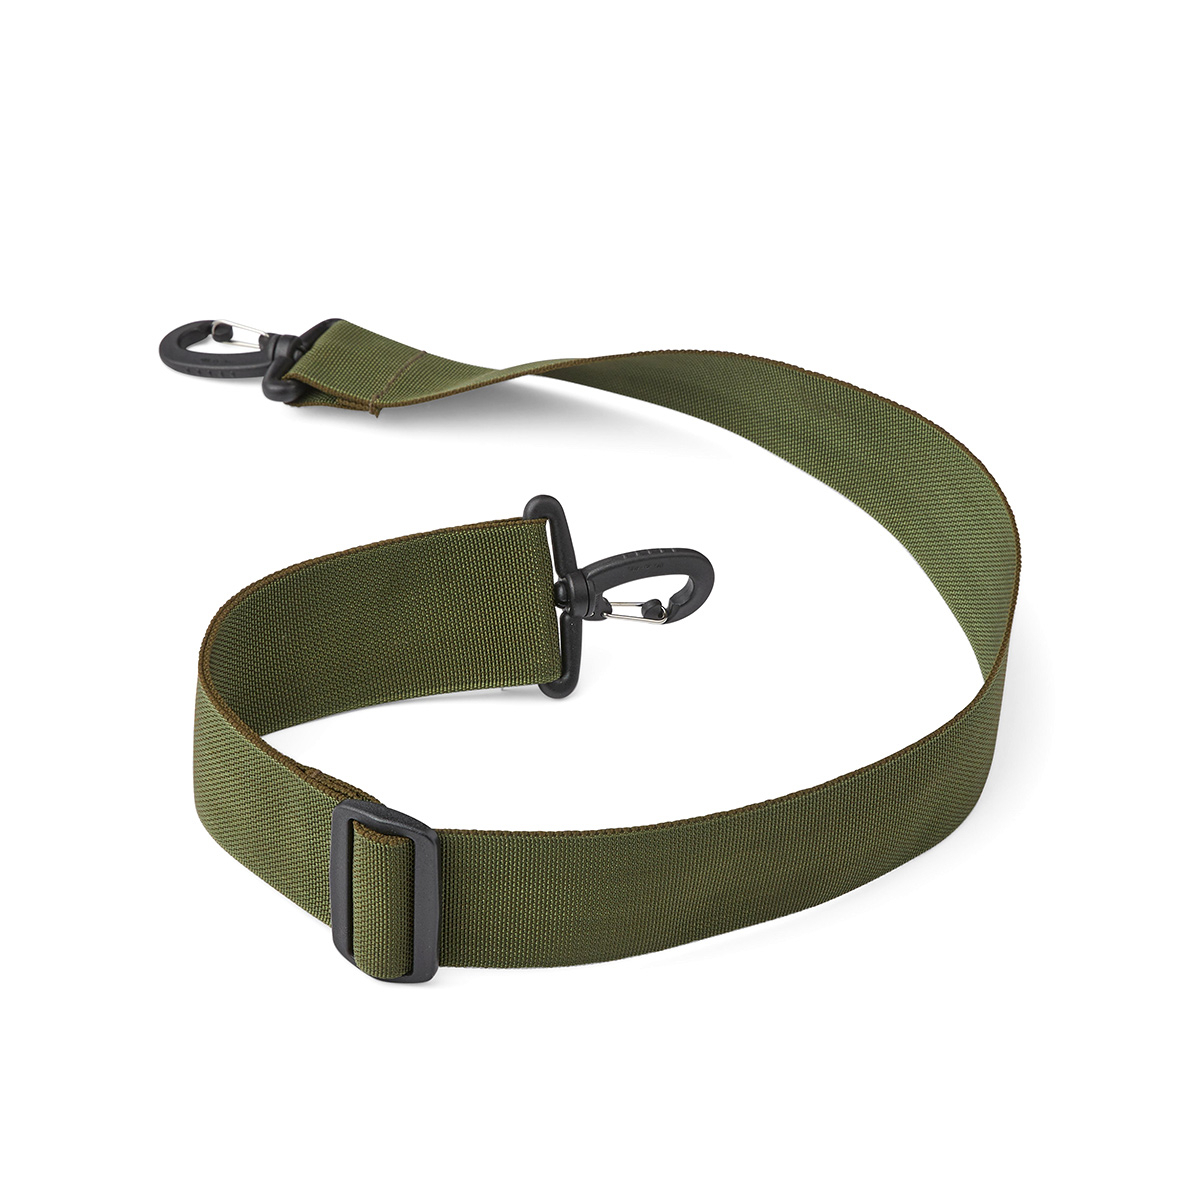 New Rebels Linde Shoulder bag Olive Green Adjustable Strap - New